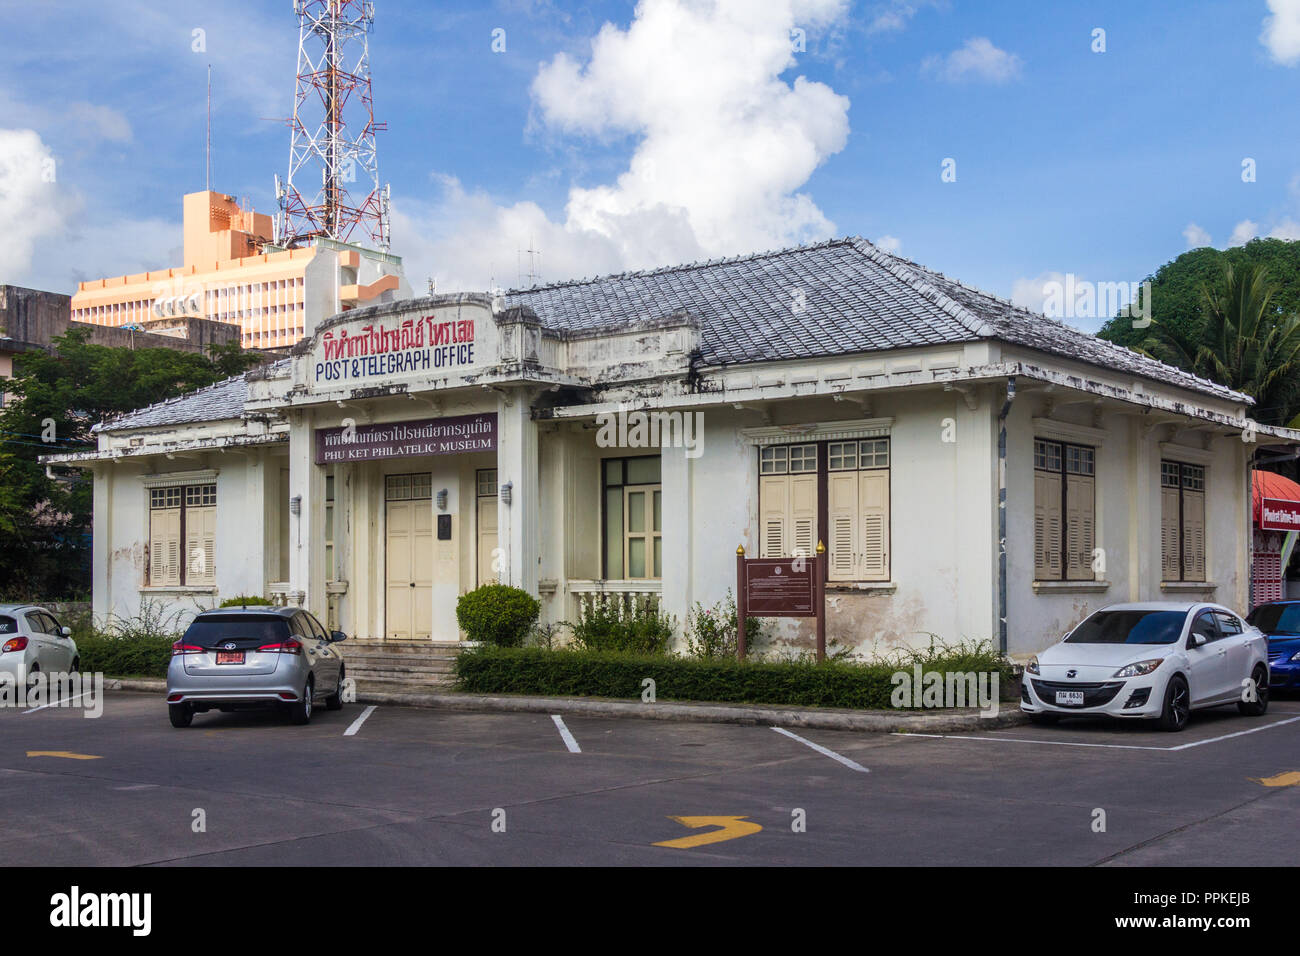 Phuket, Thaïlande - 2 septembre 2018 : l'ancien bureau de poste principal. Le bâtiment est aujourd'hui un musée philatélique. Banque D'Images